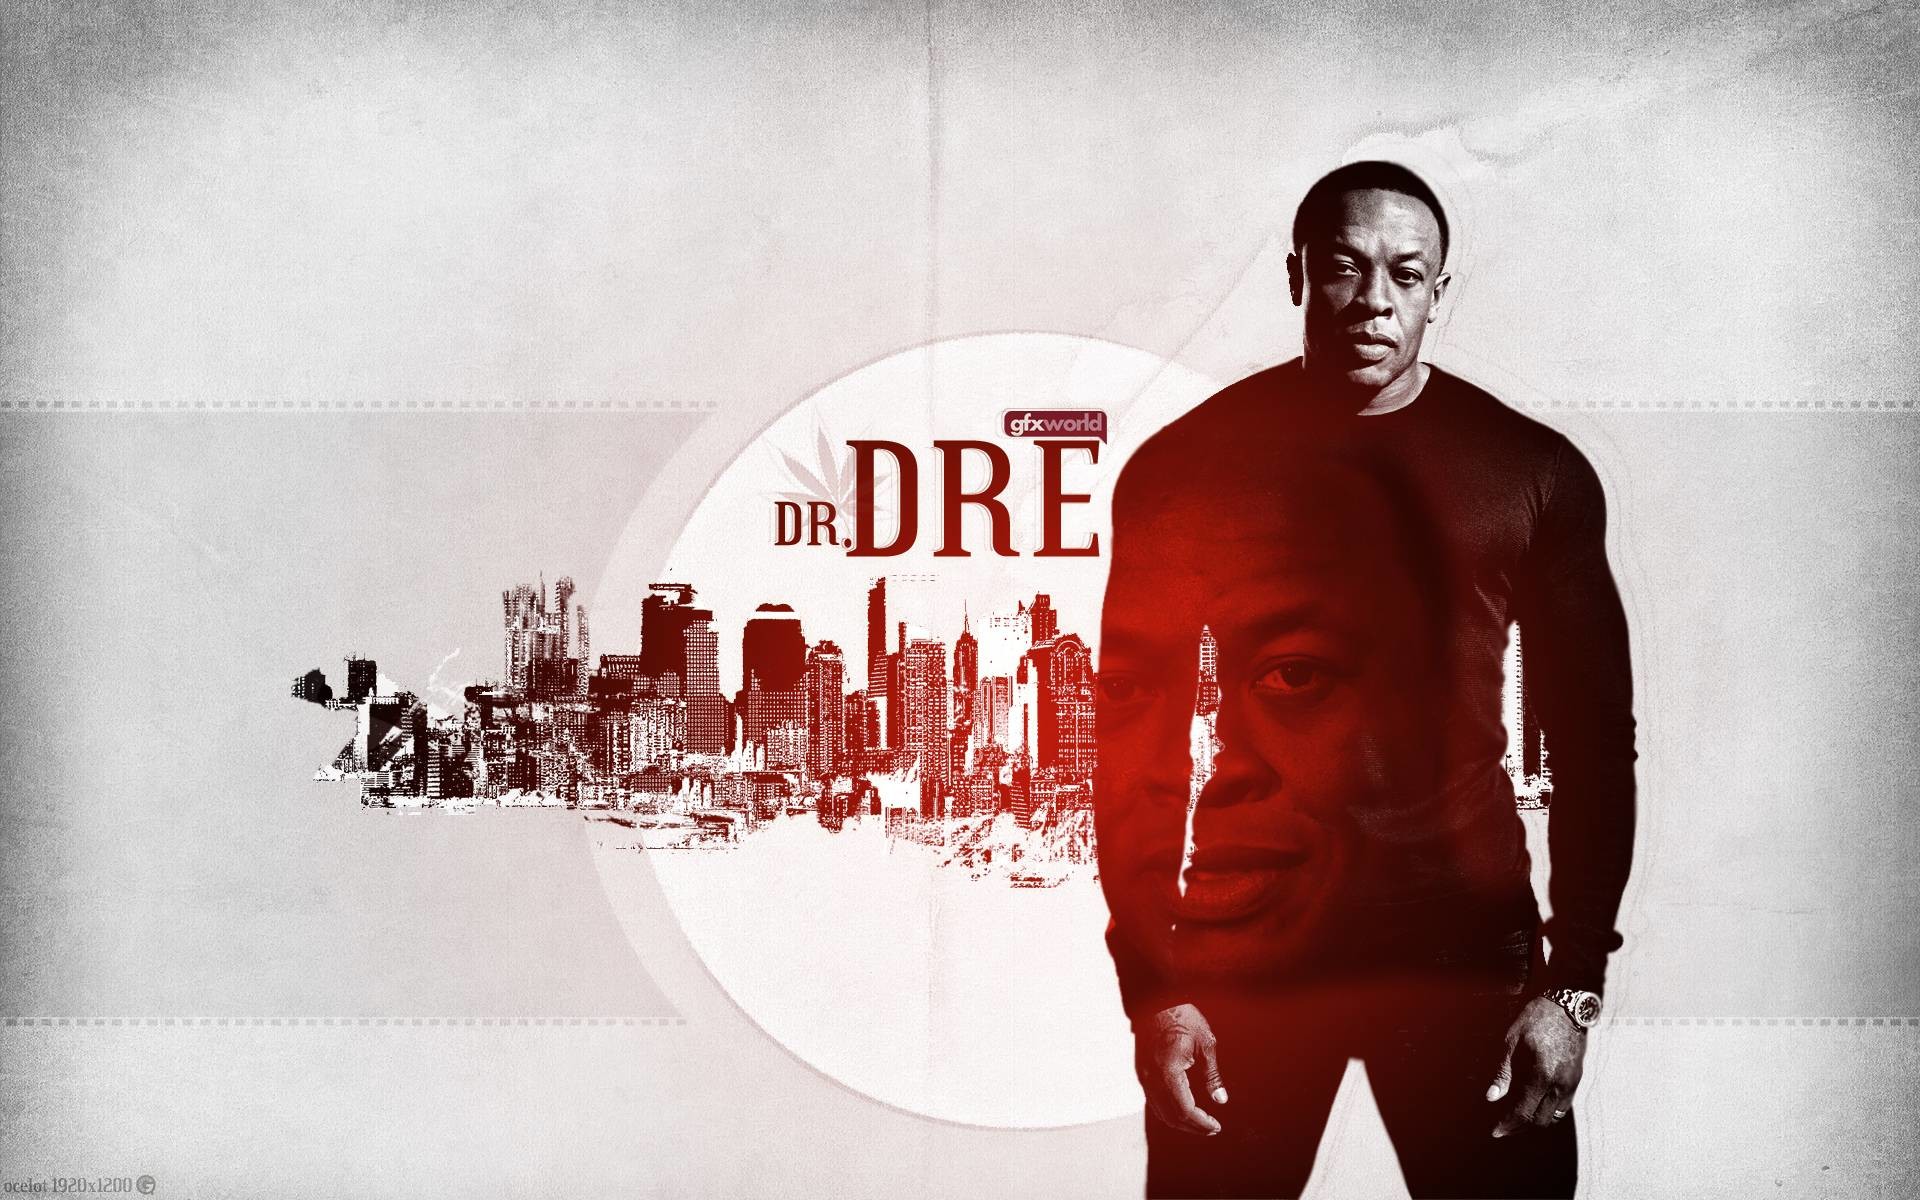 1920x1200 Fonds d'Ã©cran Dr Dre : tous les wallpapers Dr Dre